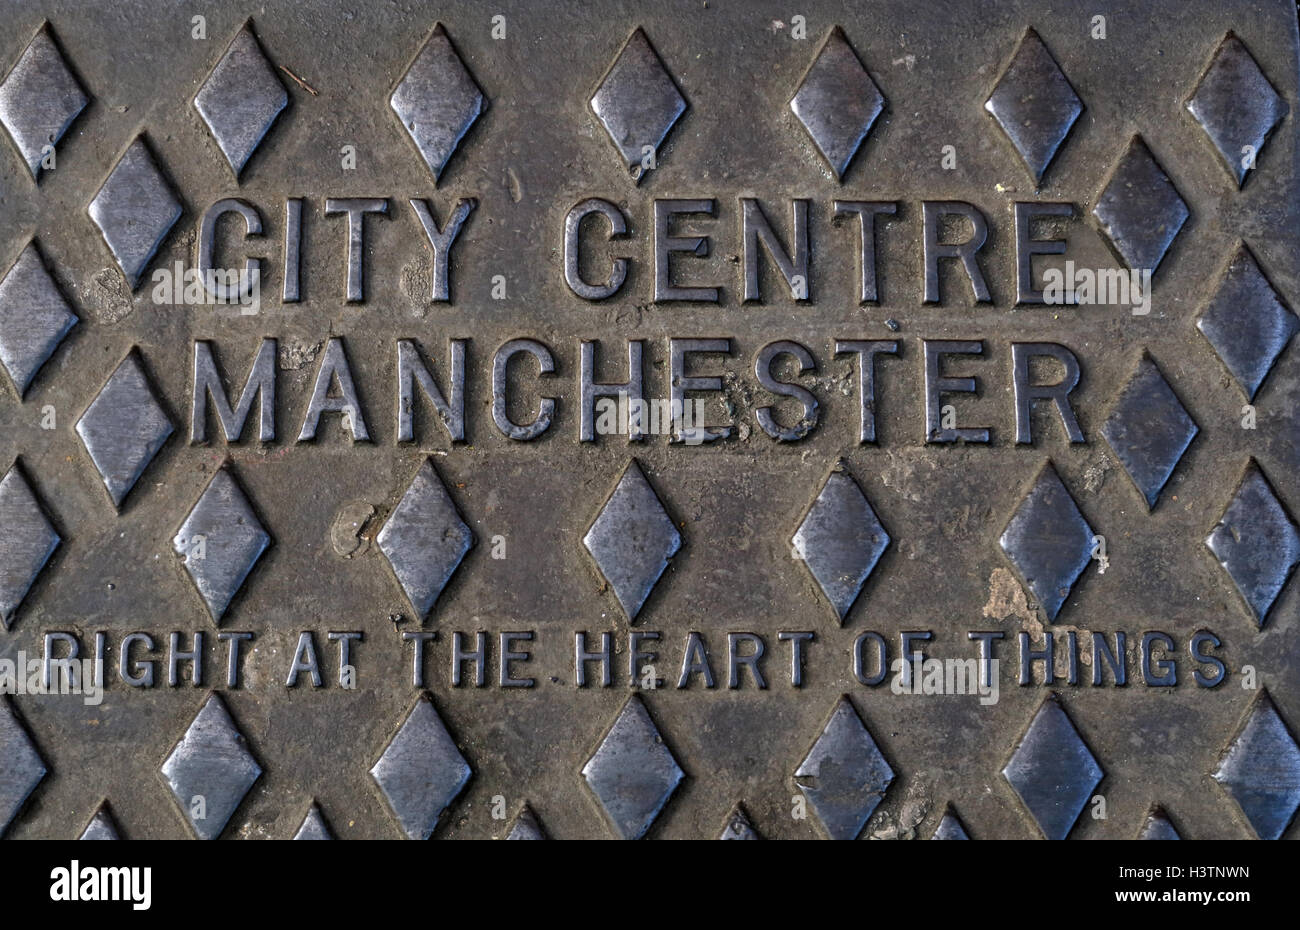 City Center Manchester Embrossed en fonte grille, en plein cœur des choses, Angleterre Royaume-Uni Banque D'Images